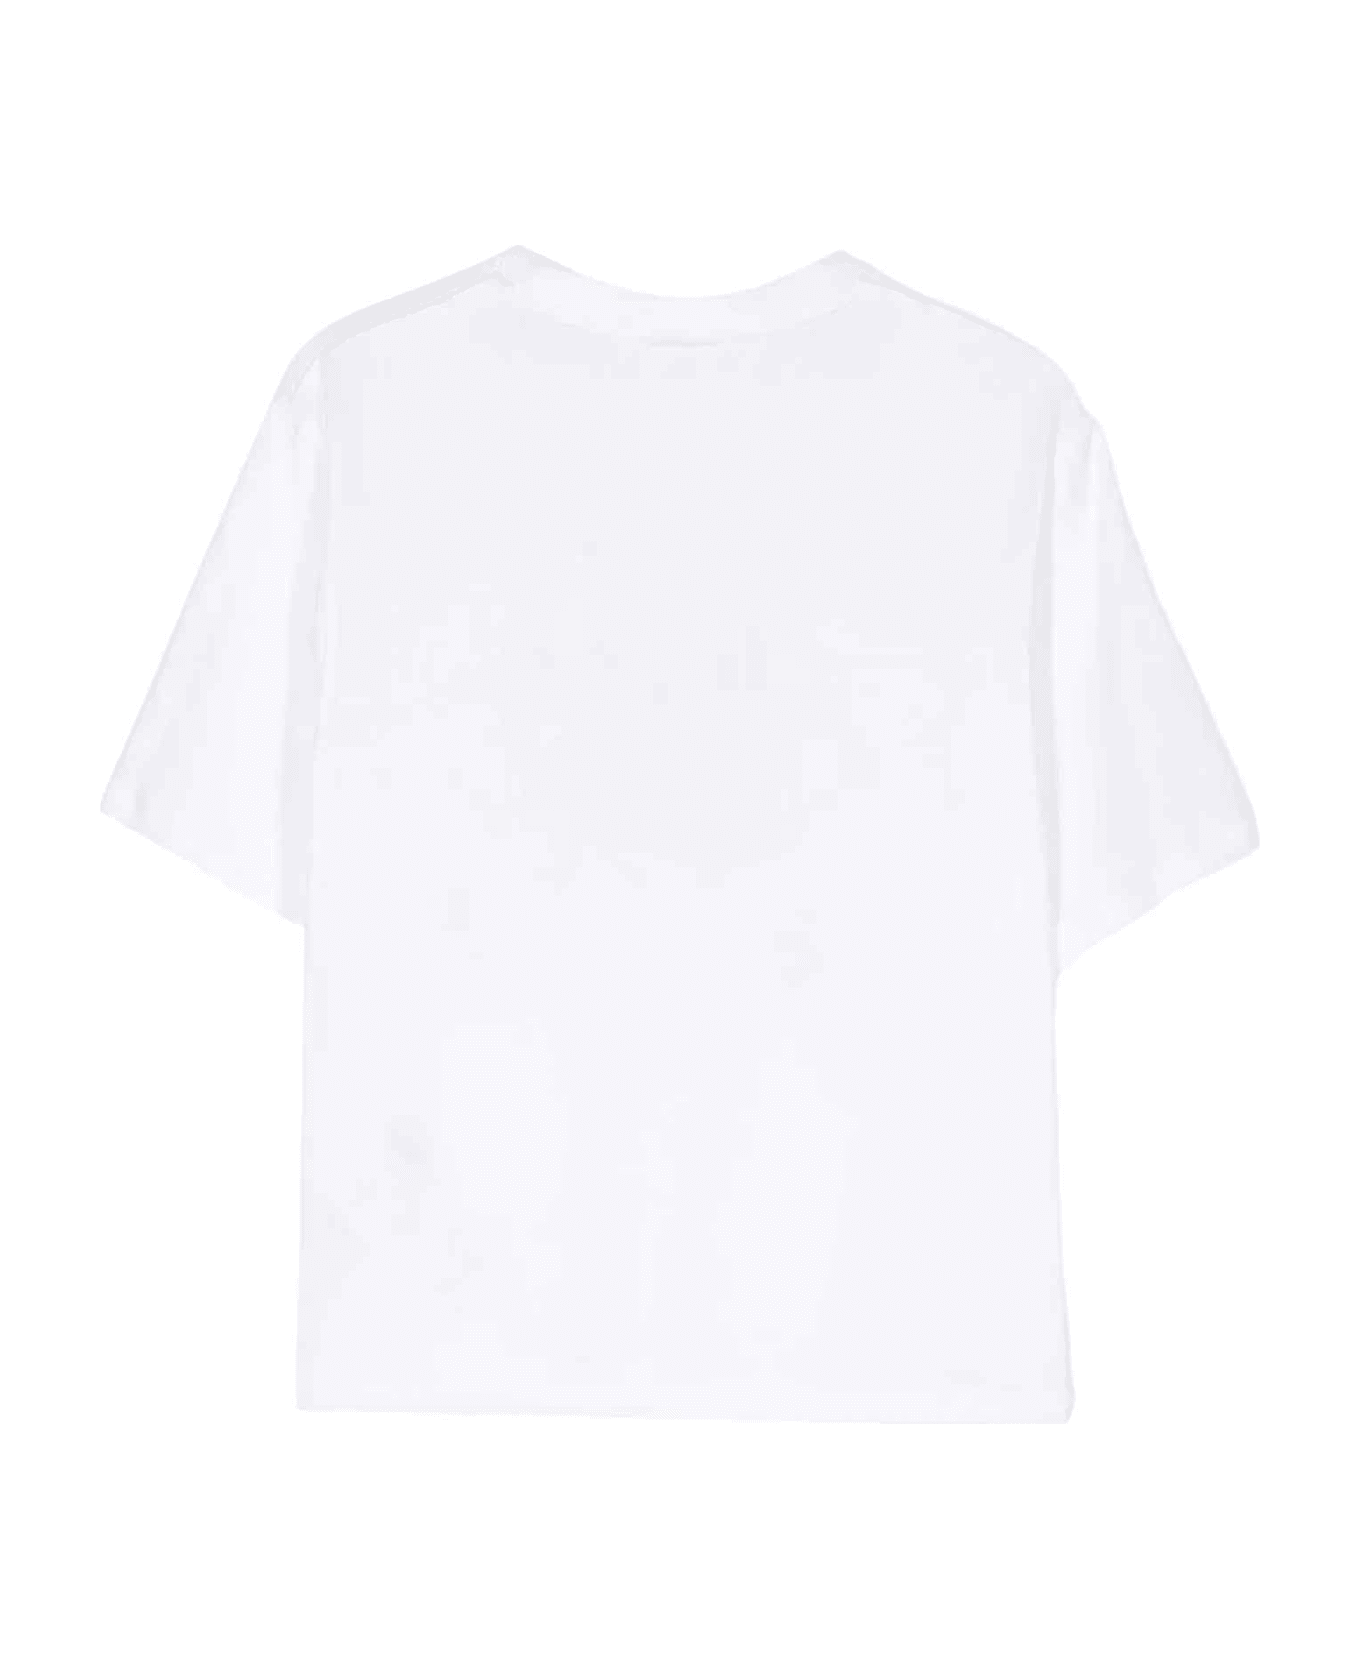 GCDS Mini White T-shirt Unisex - Bianco